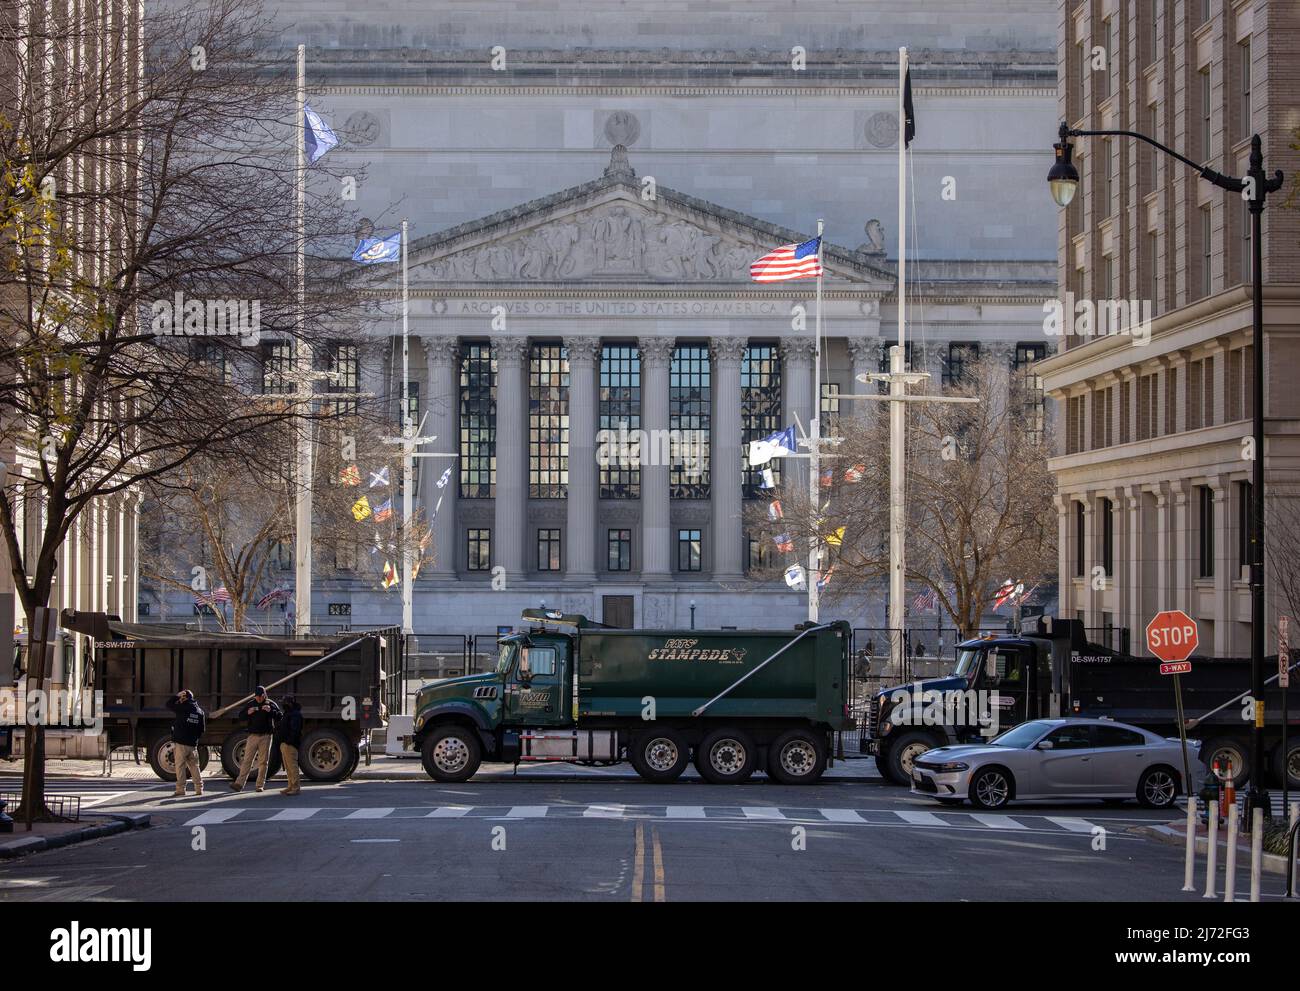 WASHINGTON, D.C. – 19. Januar 2021: Die Polizei des US-Geheimdienstes wird in der Nähe des National Archives Building in Washington, D.C. gesehen Stockfoto